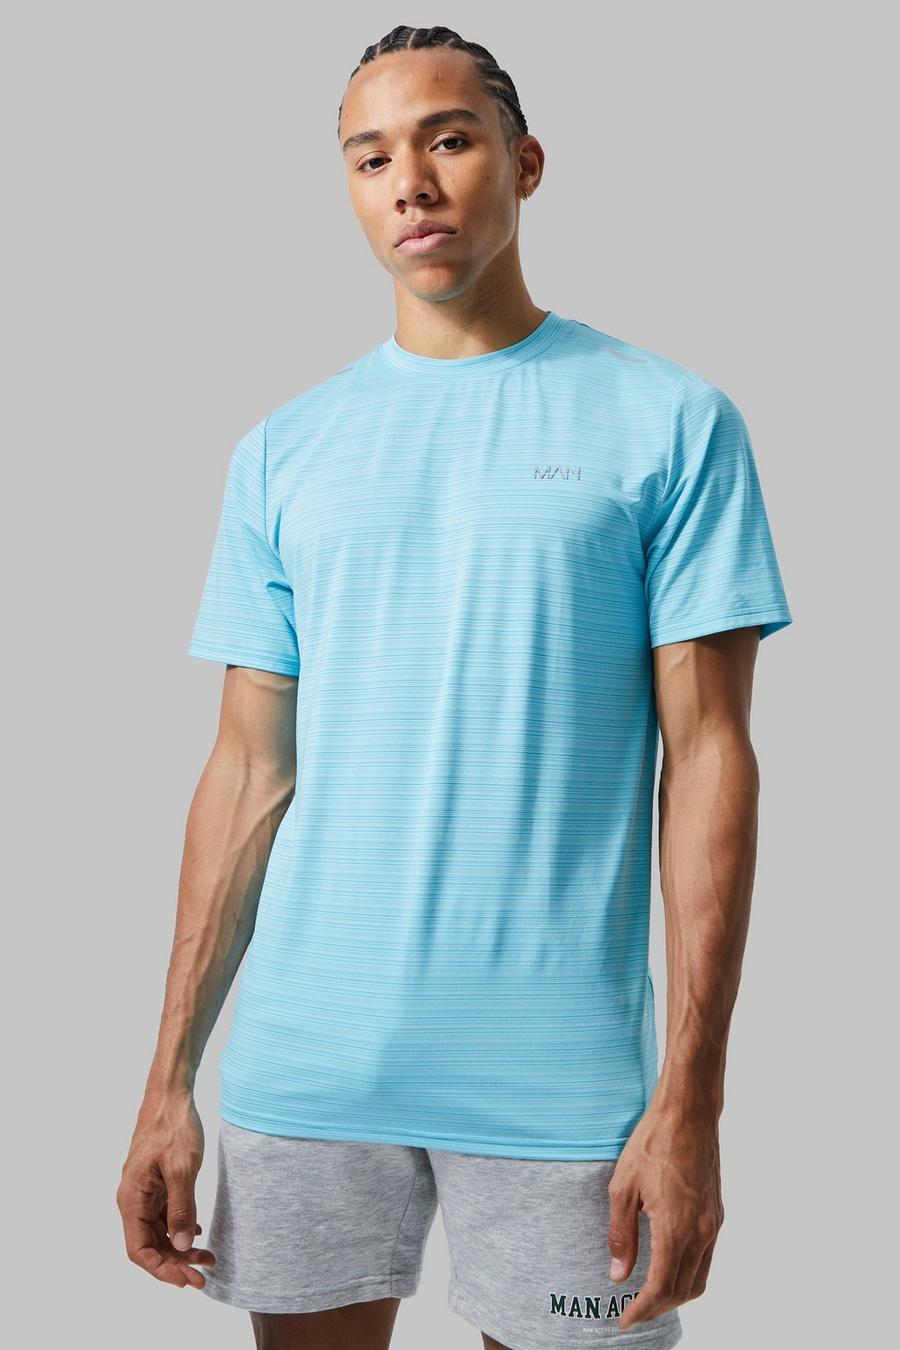 Light blue Tall Dun Man Active Performance T-Shirt image number 1